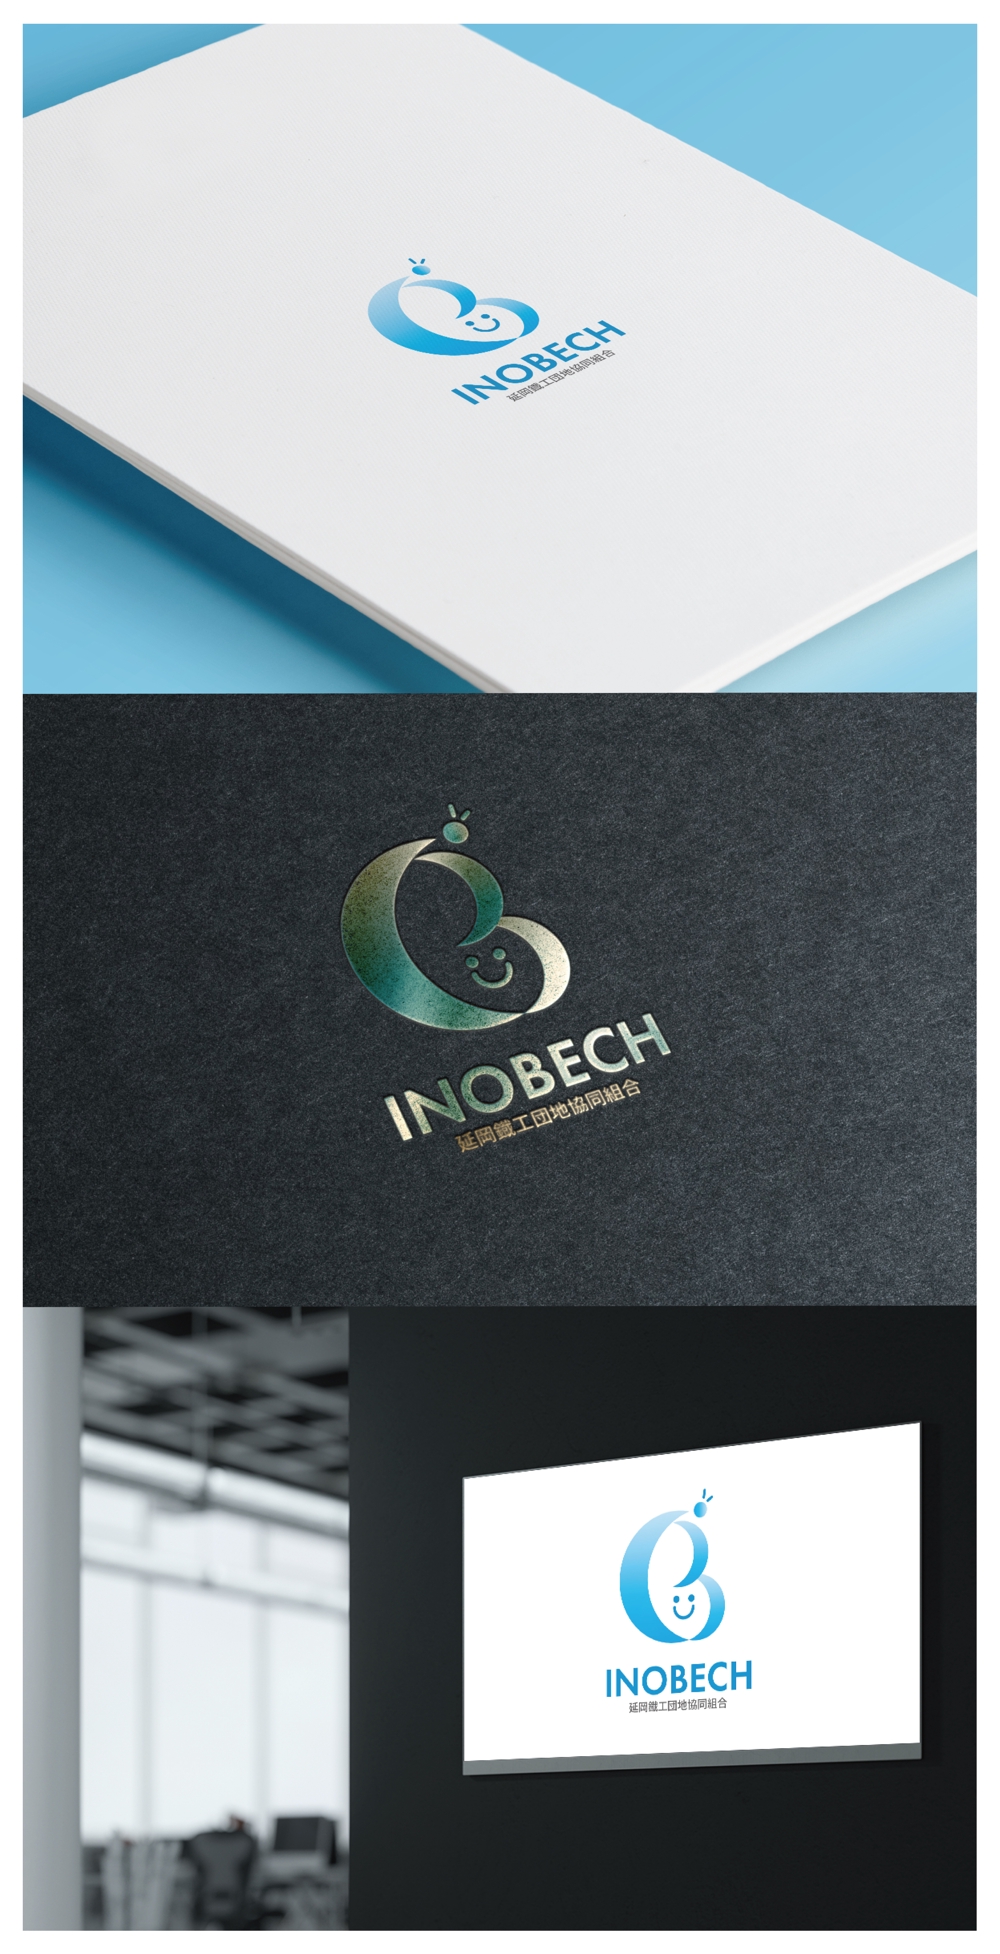 INOBECH_logo02_01.jpg